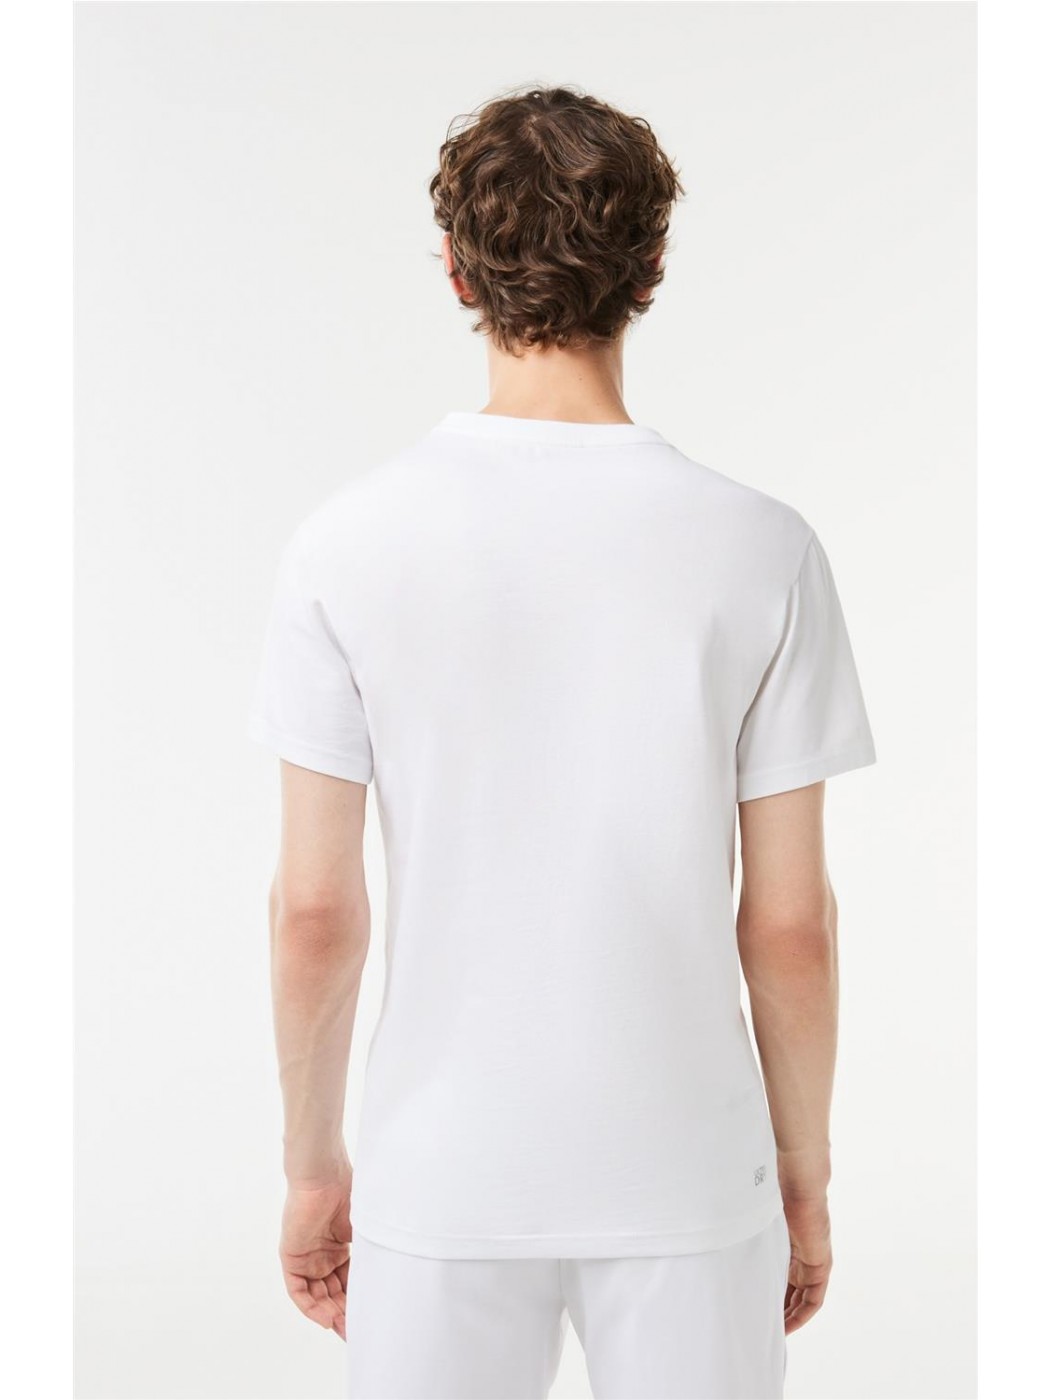 Camiseta Lacoste color blanco para hombre-a